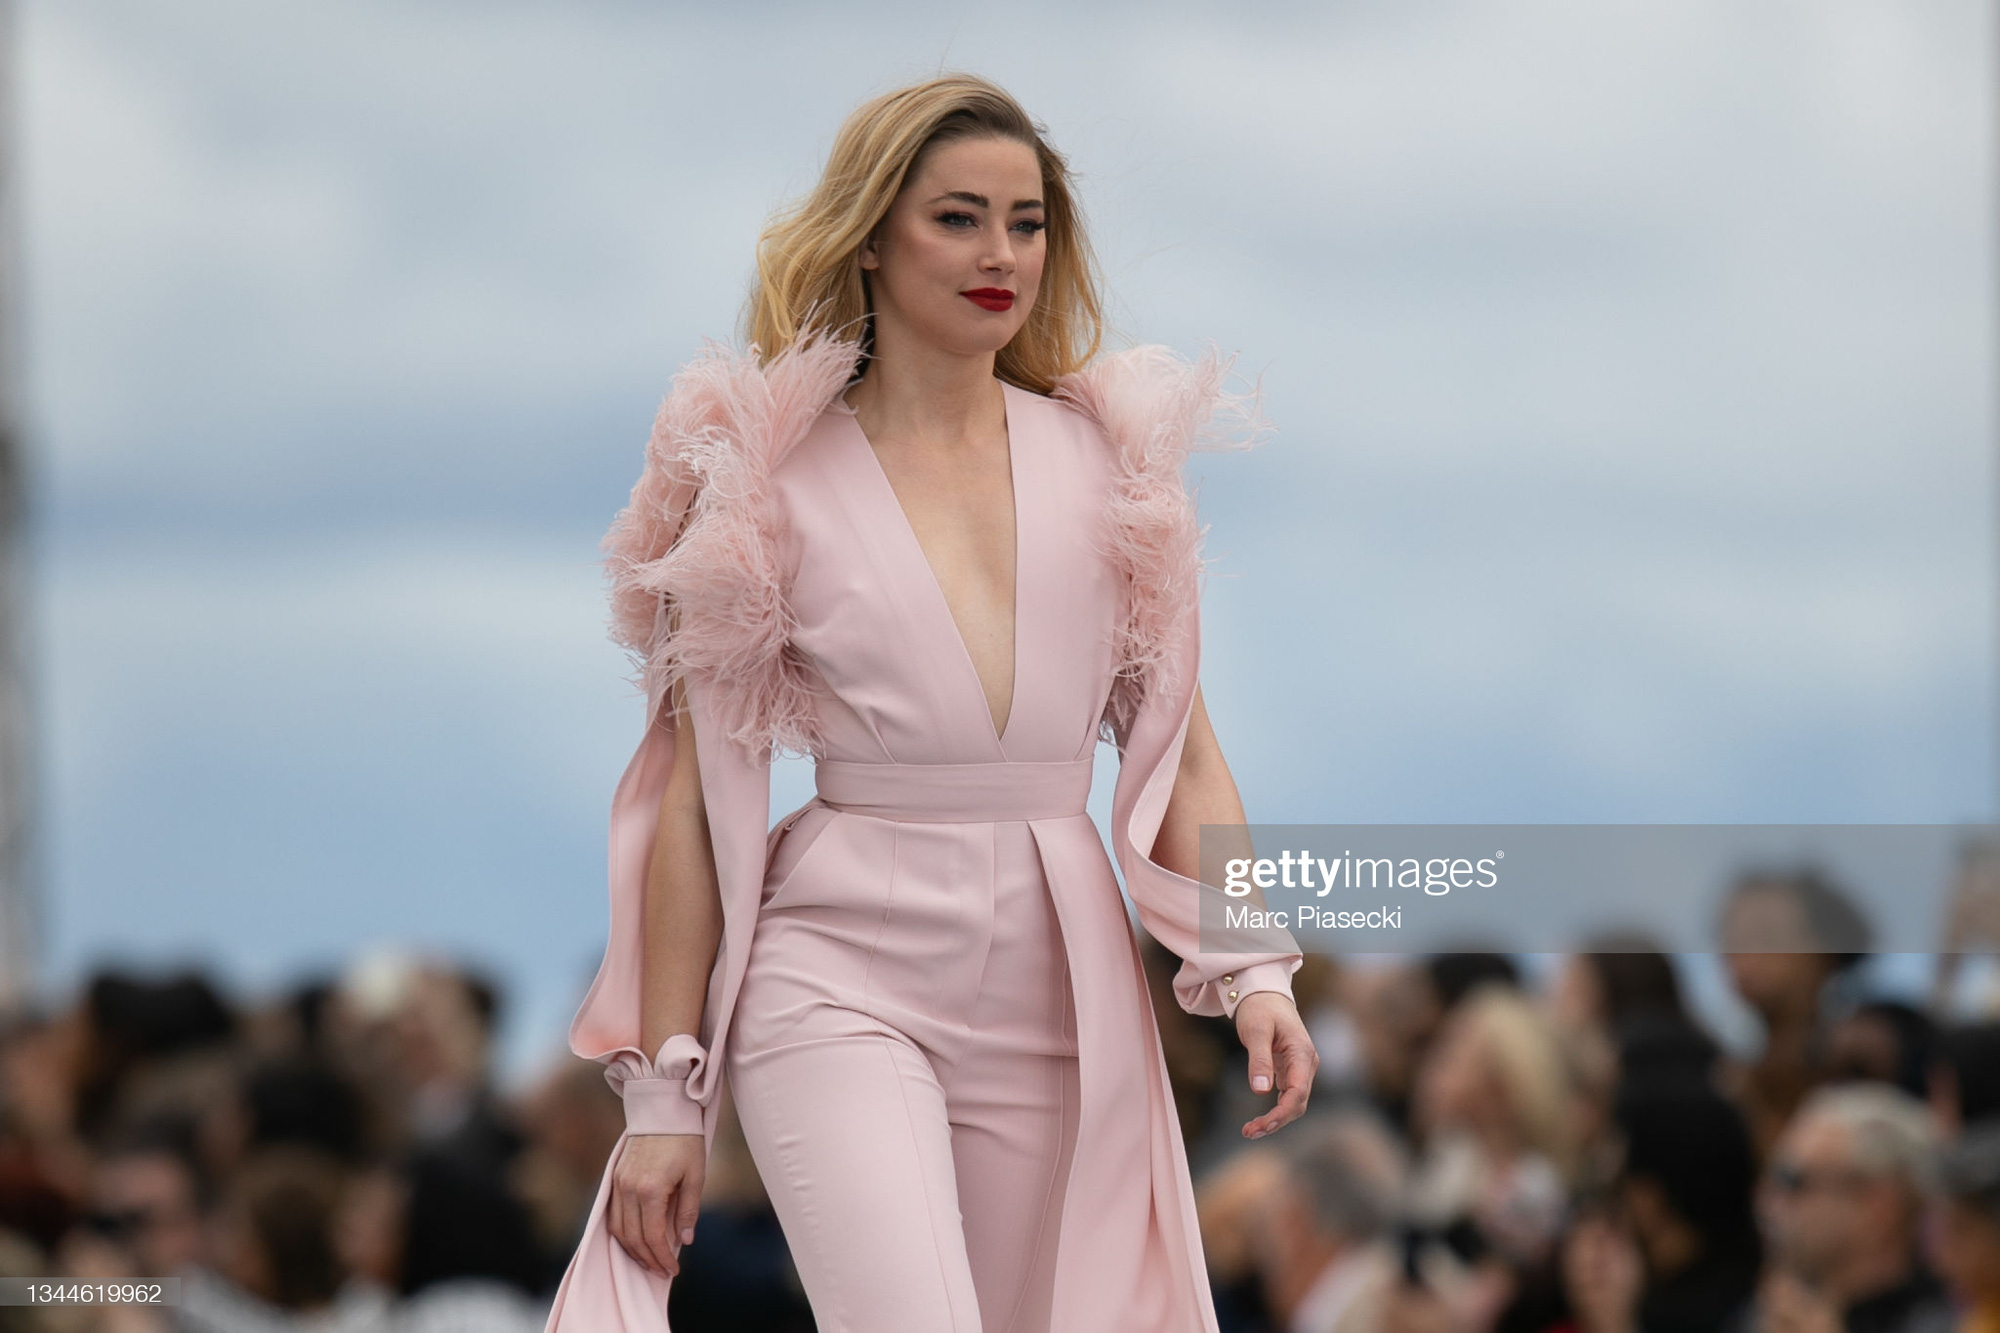 2 mỹ nhân Hollywood náo loạn trời Paris: Amber Heard khoe ngực sexy, mặt lộ khuyết điểm nhưng vẫn lấn át cả Camila xuống sắc hậu tăng cân - Ảnh 11.